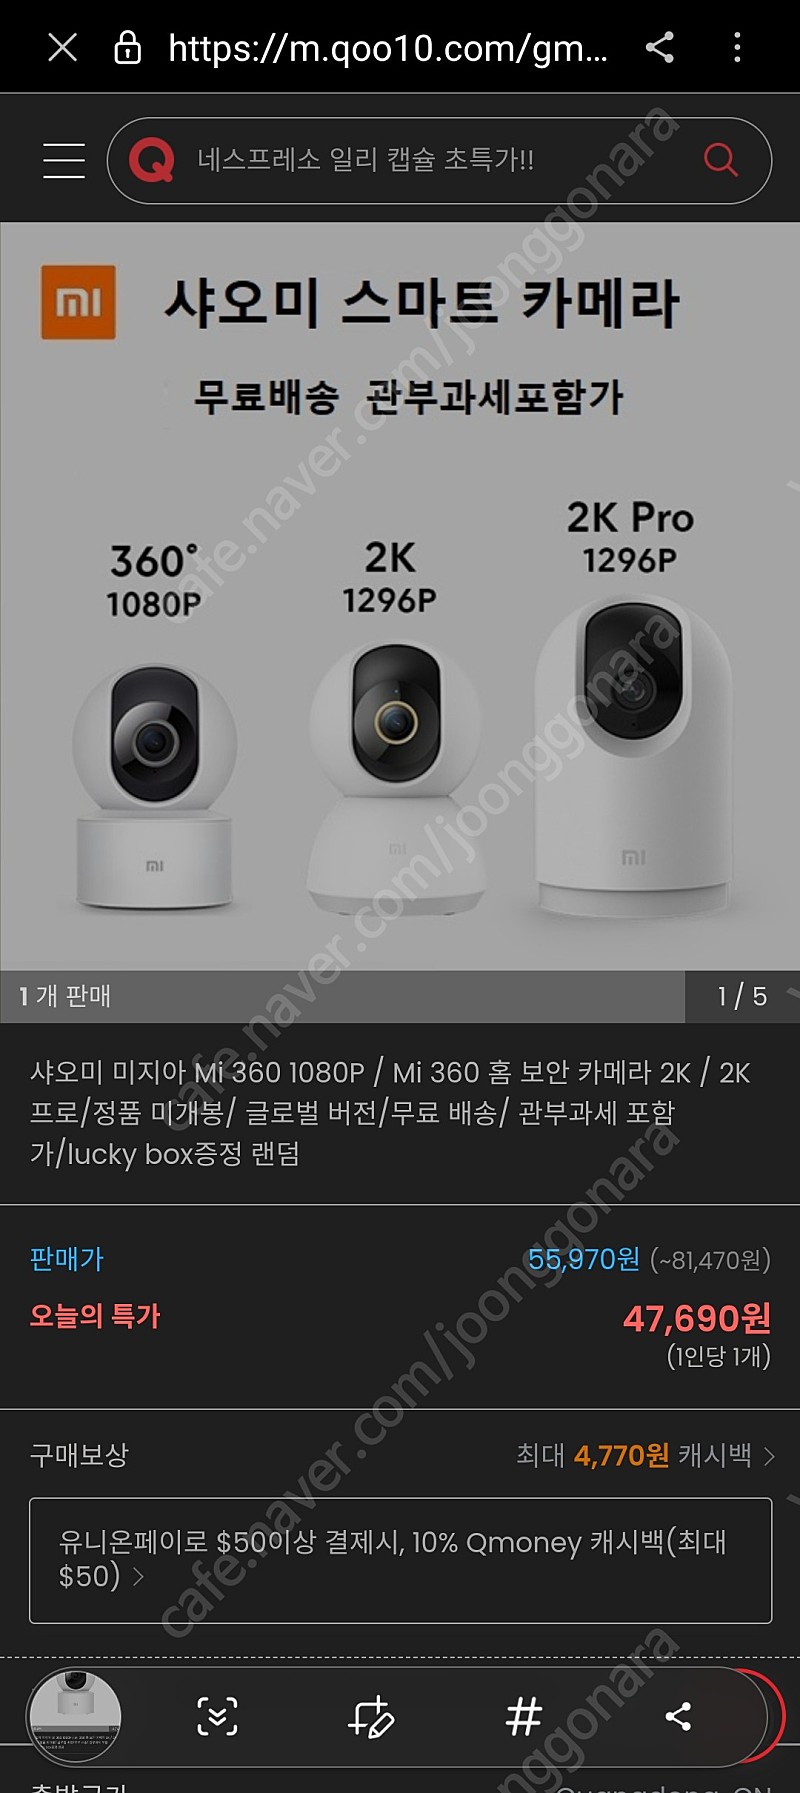 샤오미 cctv 홈캠 2k pro팝니다.